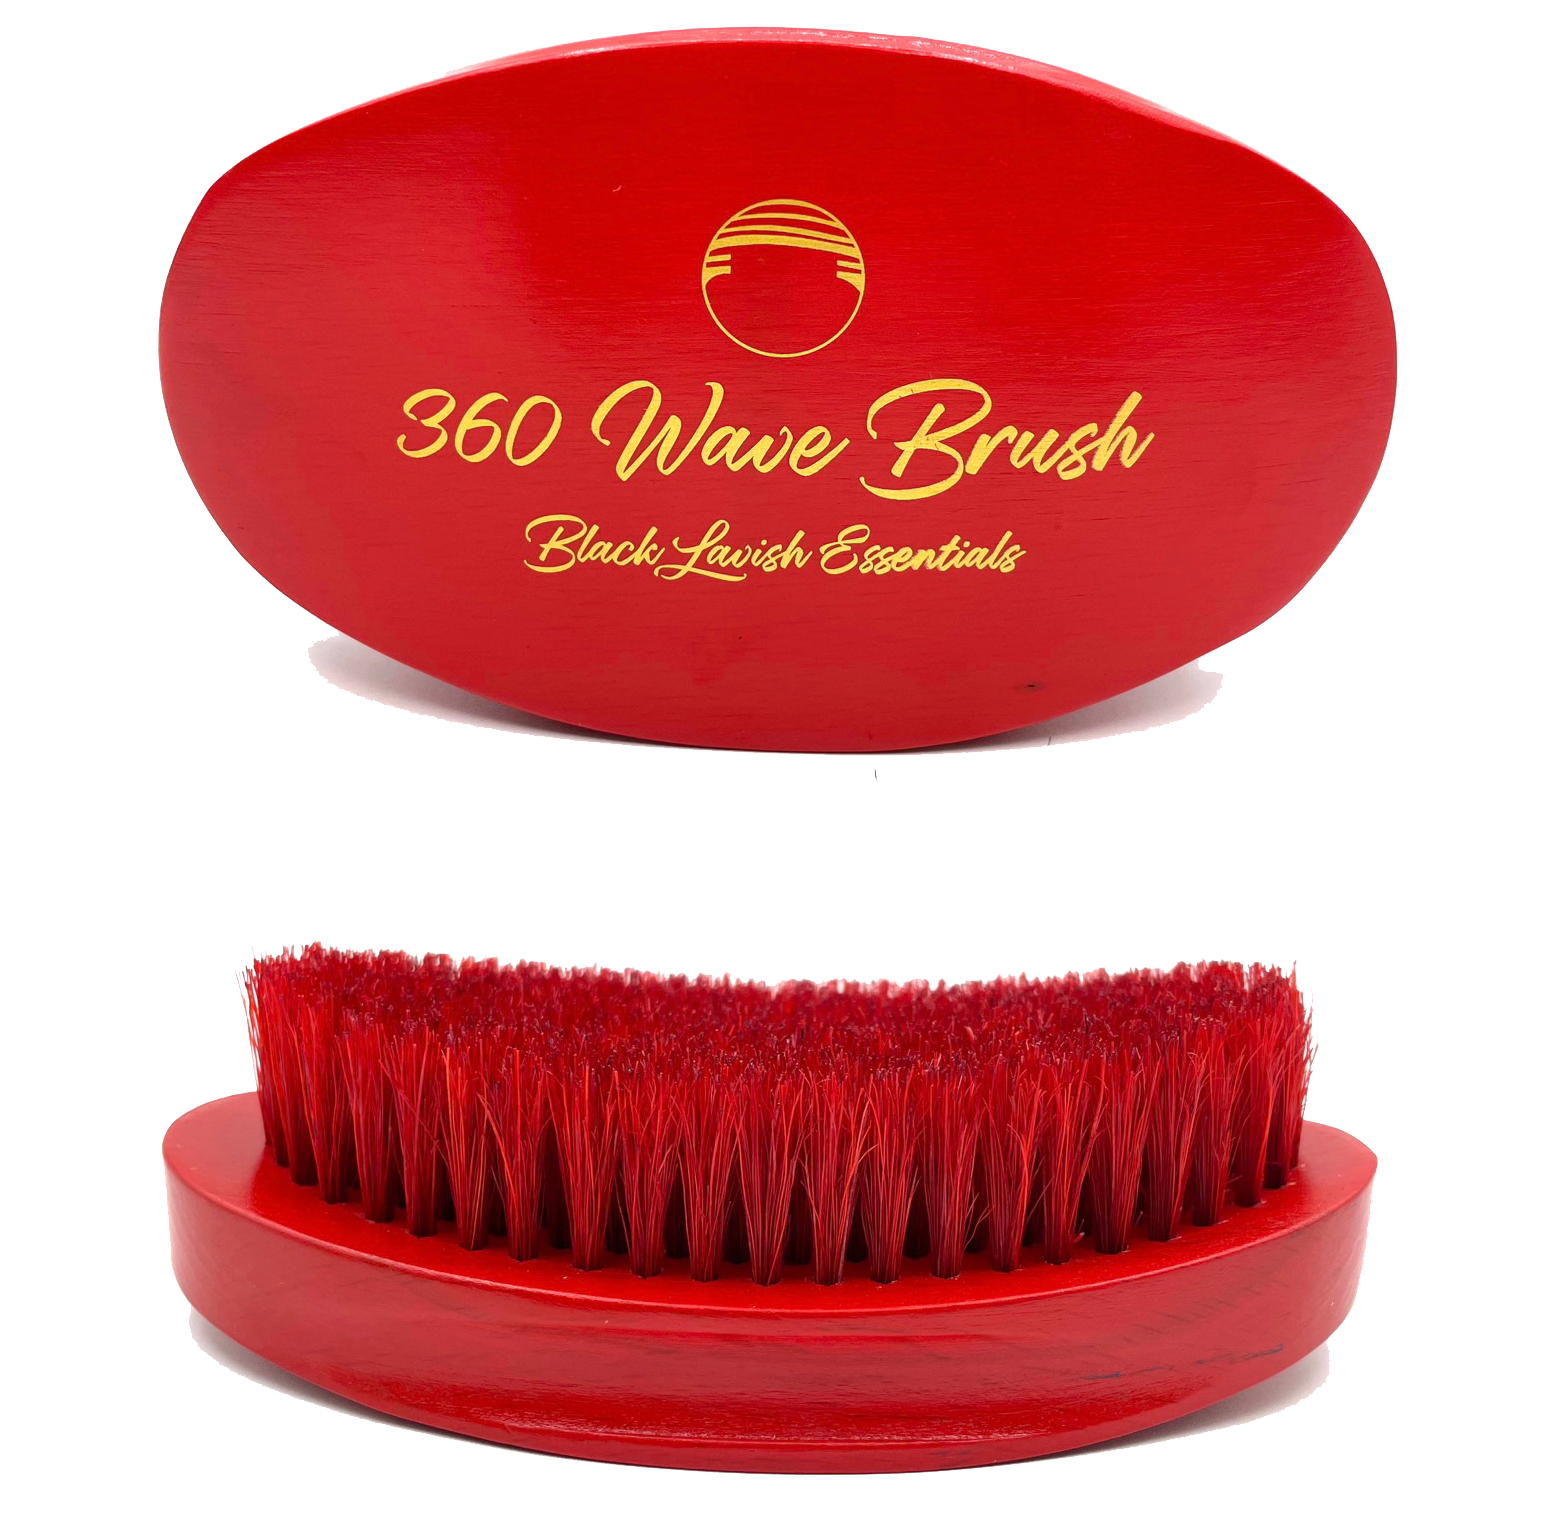 360 Wave Brush - Soft & Medium Hard Bristles